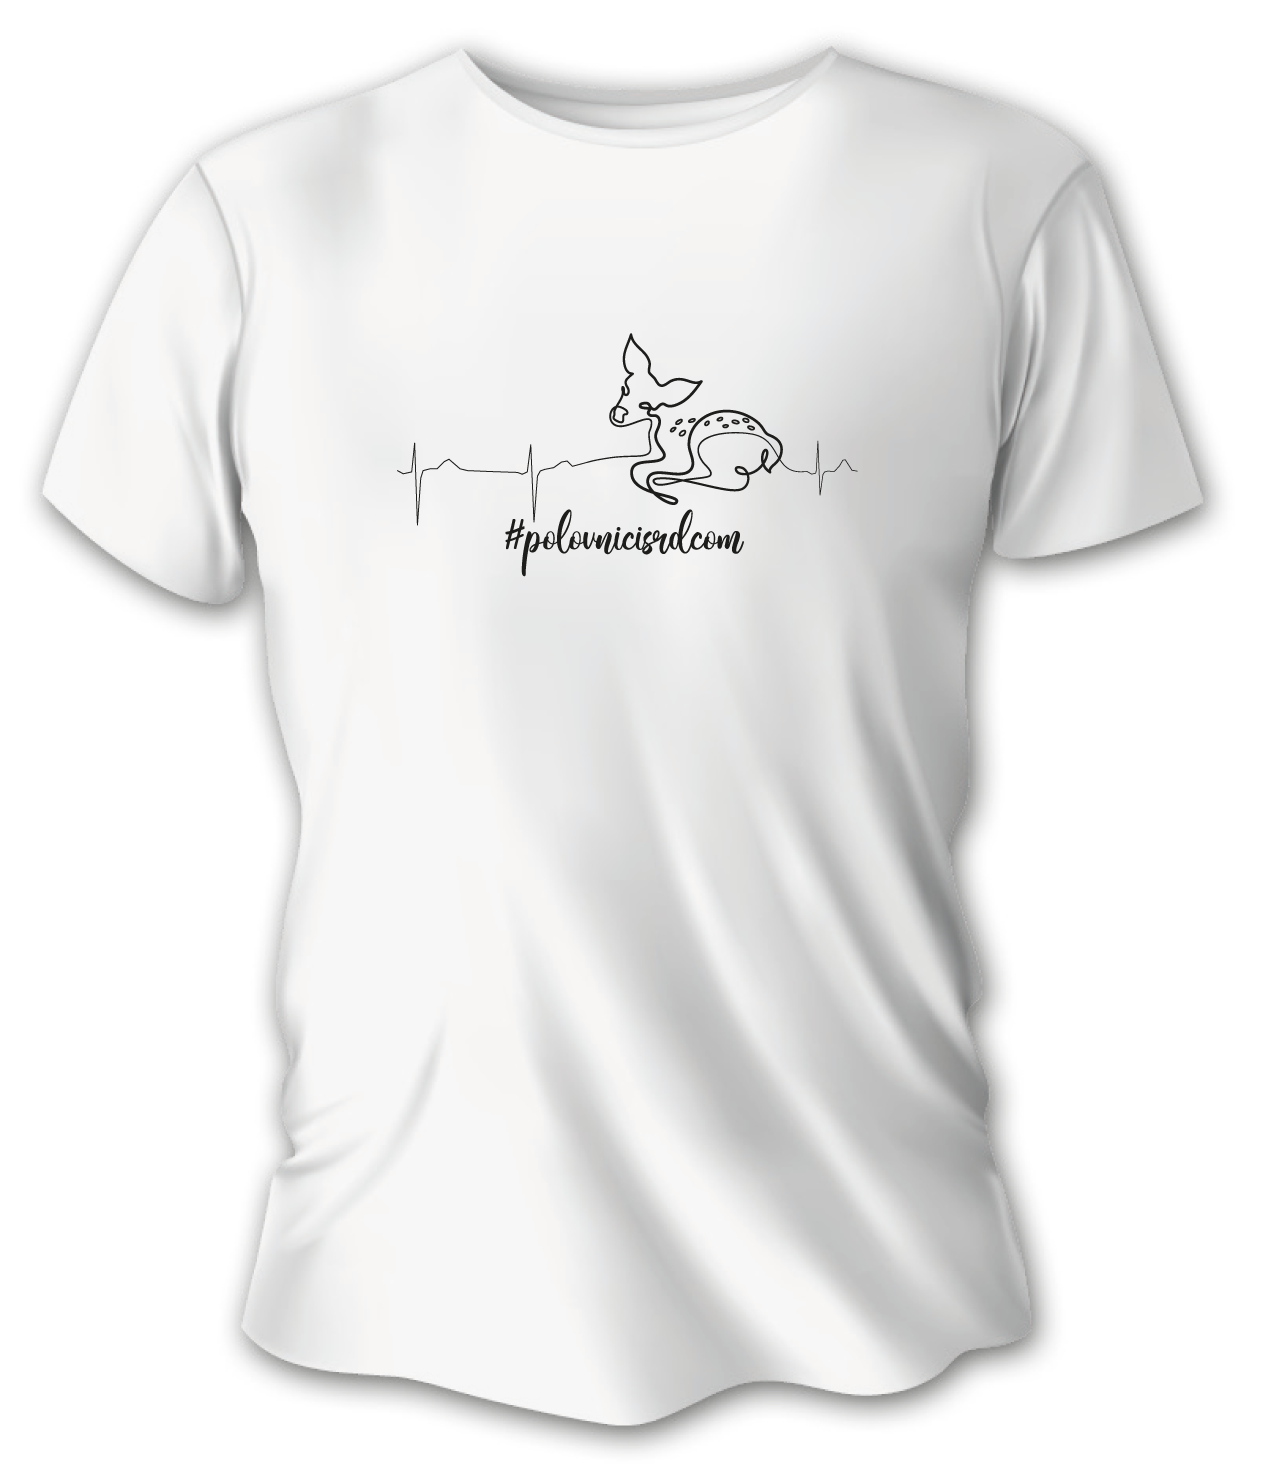 Dámske poľovnícke tričko TETRAO polovnicisrdcom - srna - biele  XS